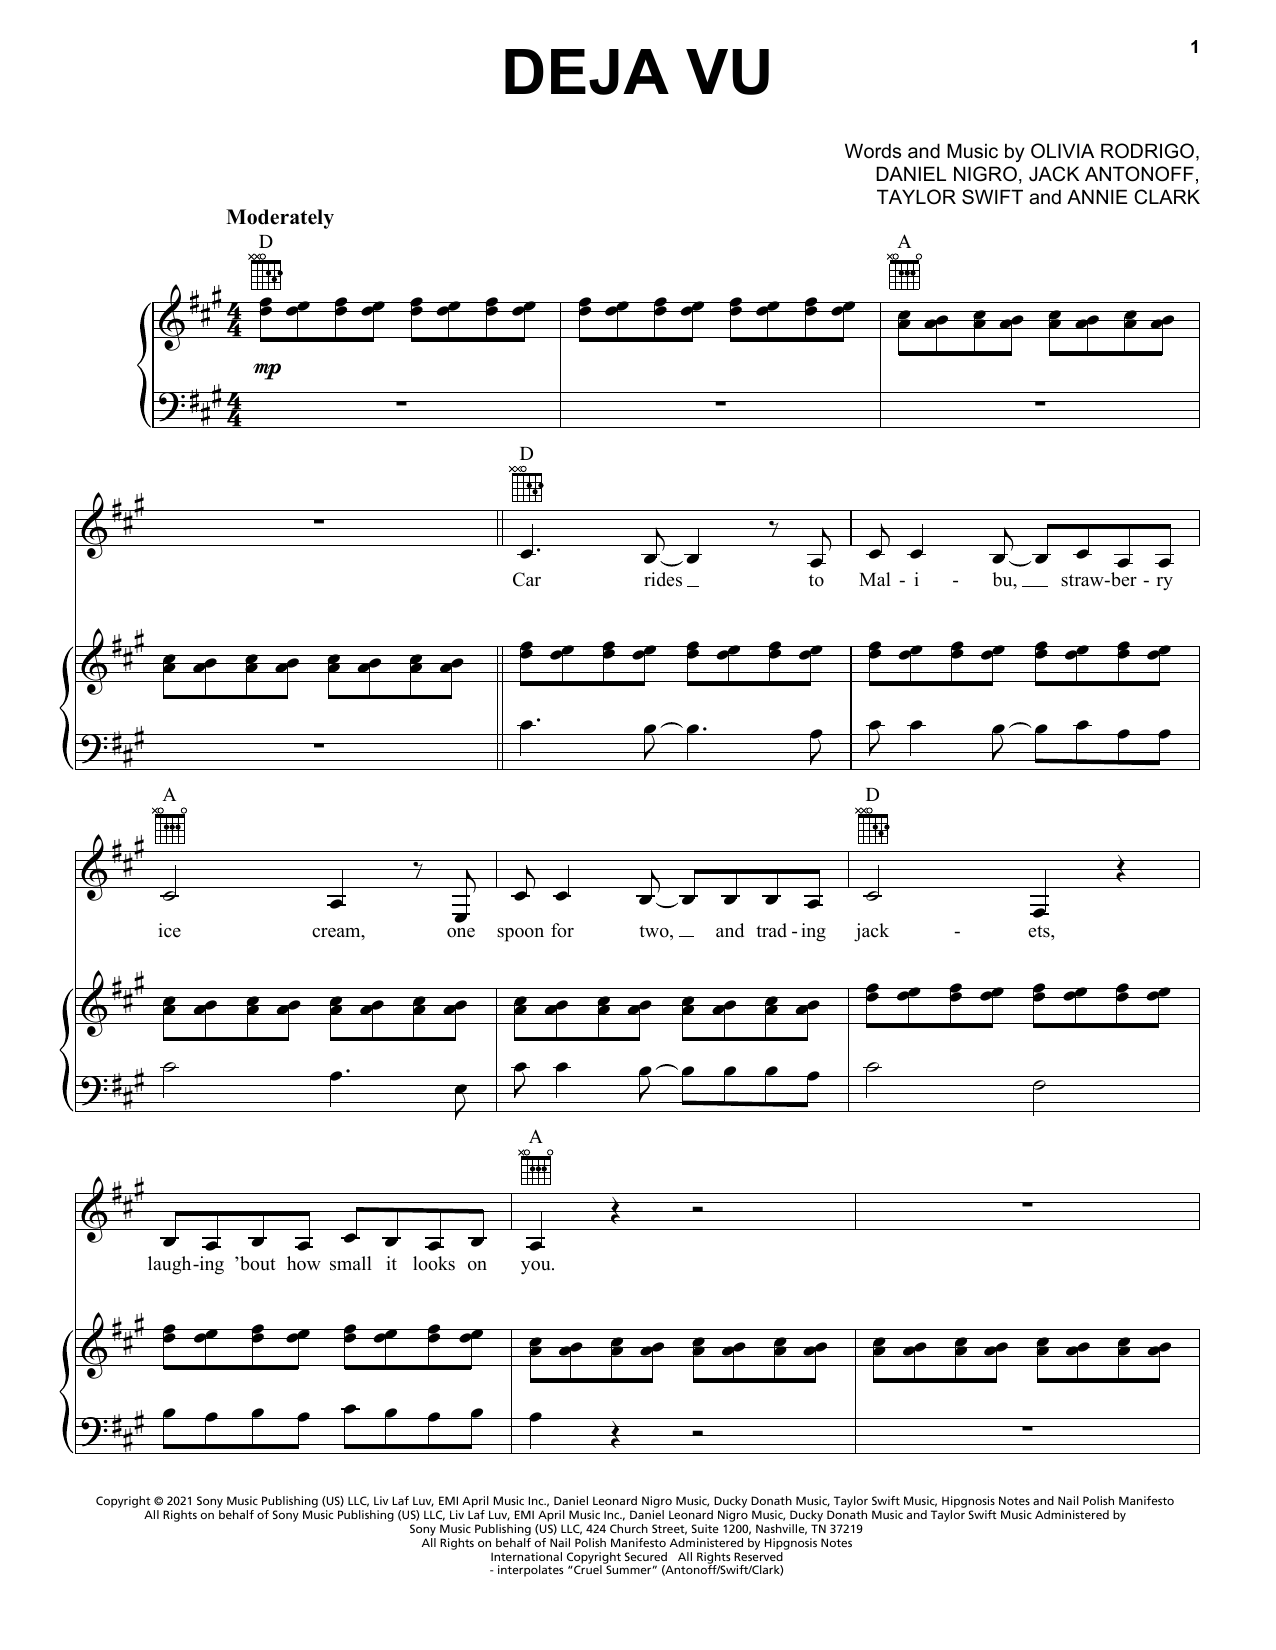 Olivia Rodrigo deja vu Sheet Music Notes & Chords for Easy Piano - Download or Print PDF